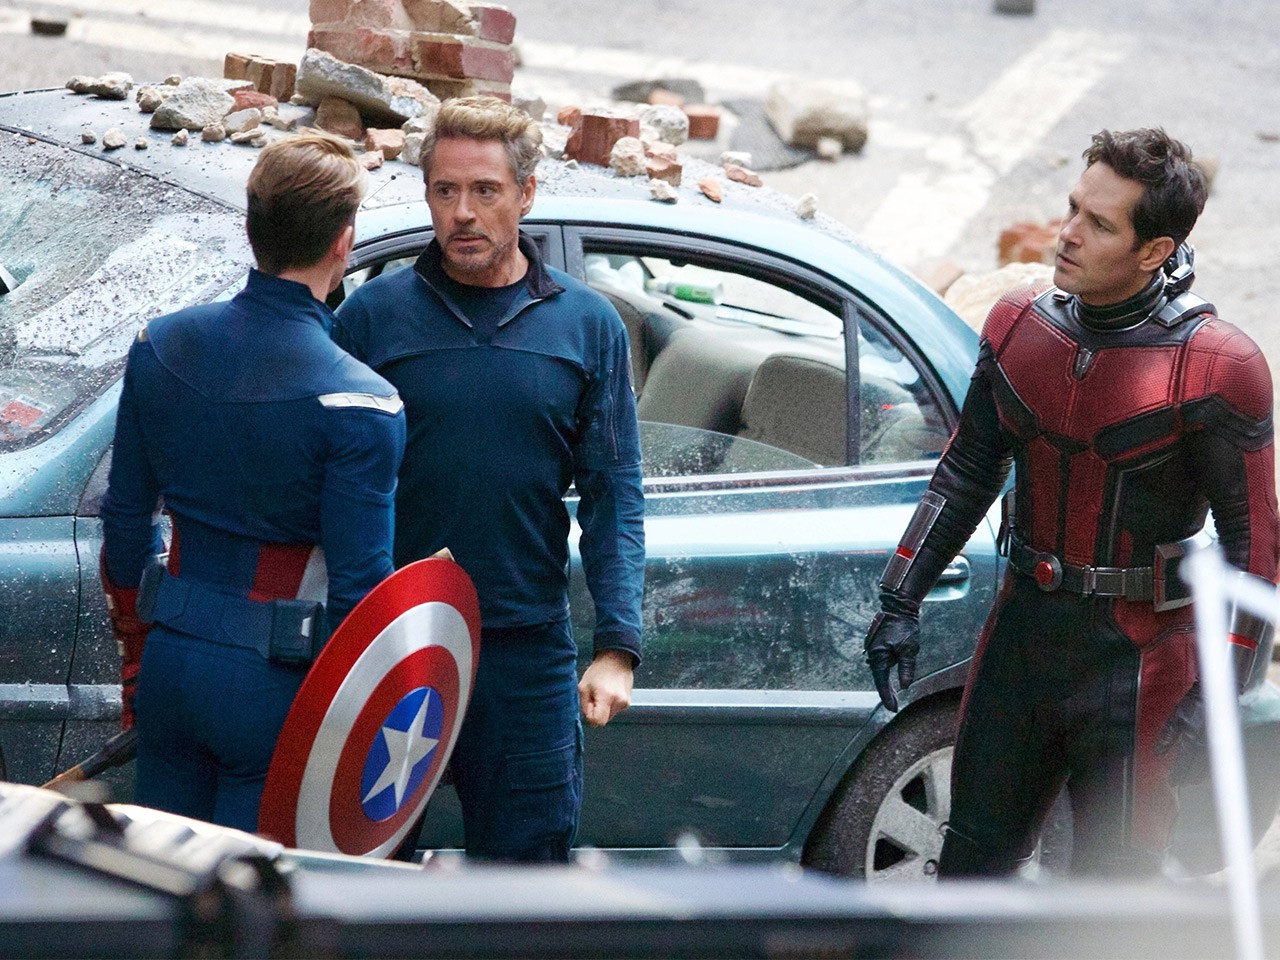 Avengers 4: Cuối cùng thì Avengers đã trở lại, sẵn sàng đương đầu với một thế giới mới khó lường. Với sự góp mặt của các nhân vật yêu thích như Iron Man, Captain America và Black Widow, bộ phim hứa hẹn đem lại cho người xem một trải nghiệm hoành tráng và đầy kịch tính.